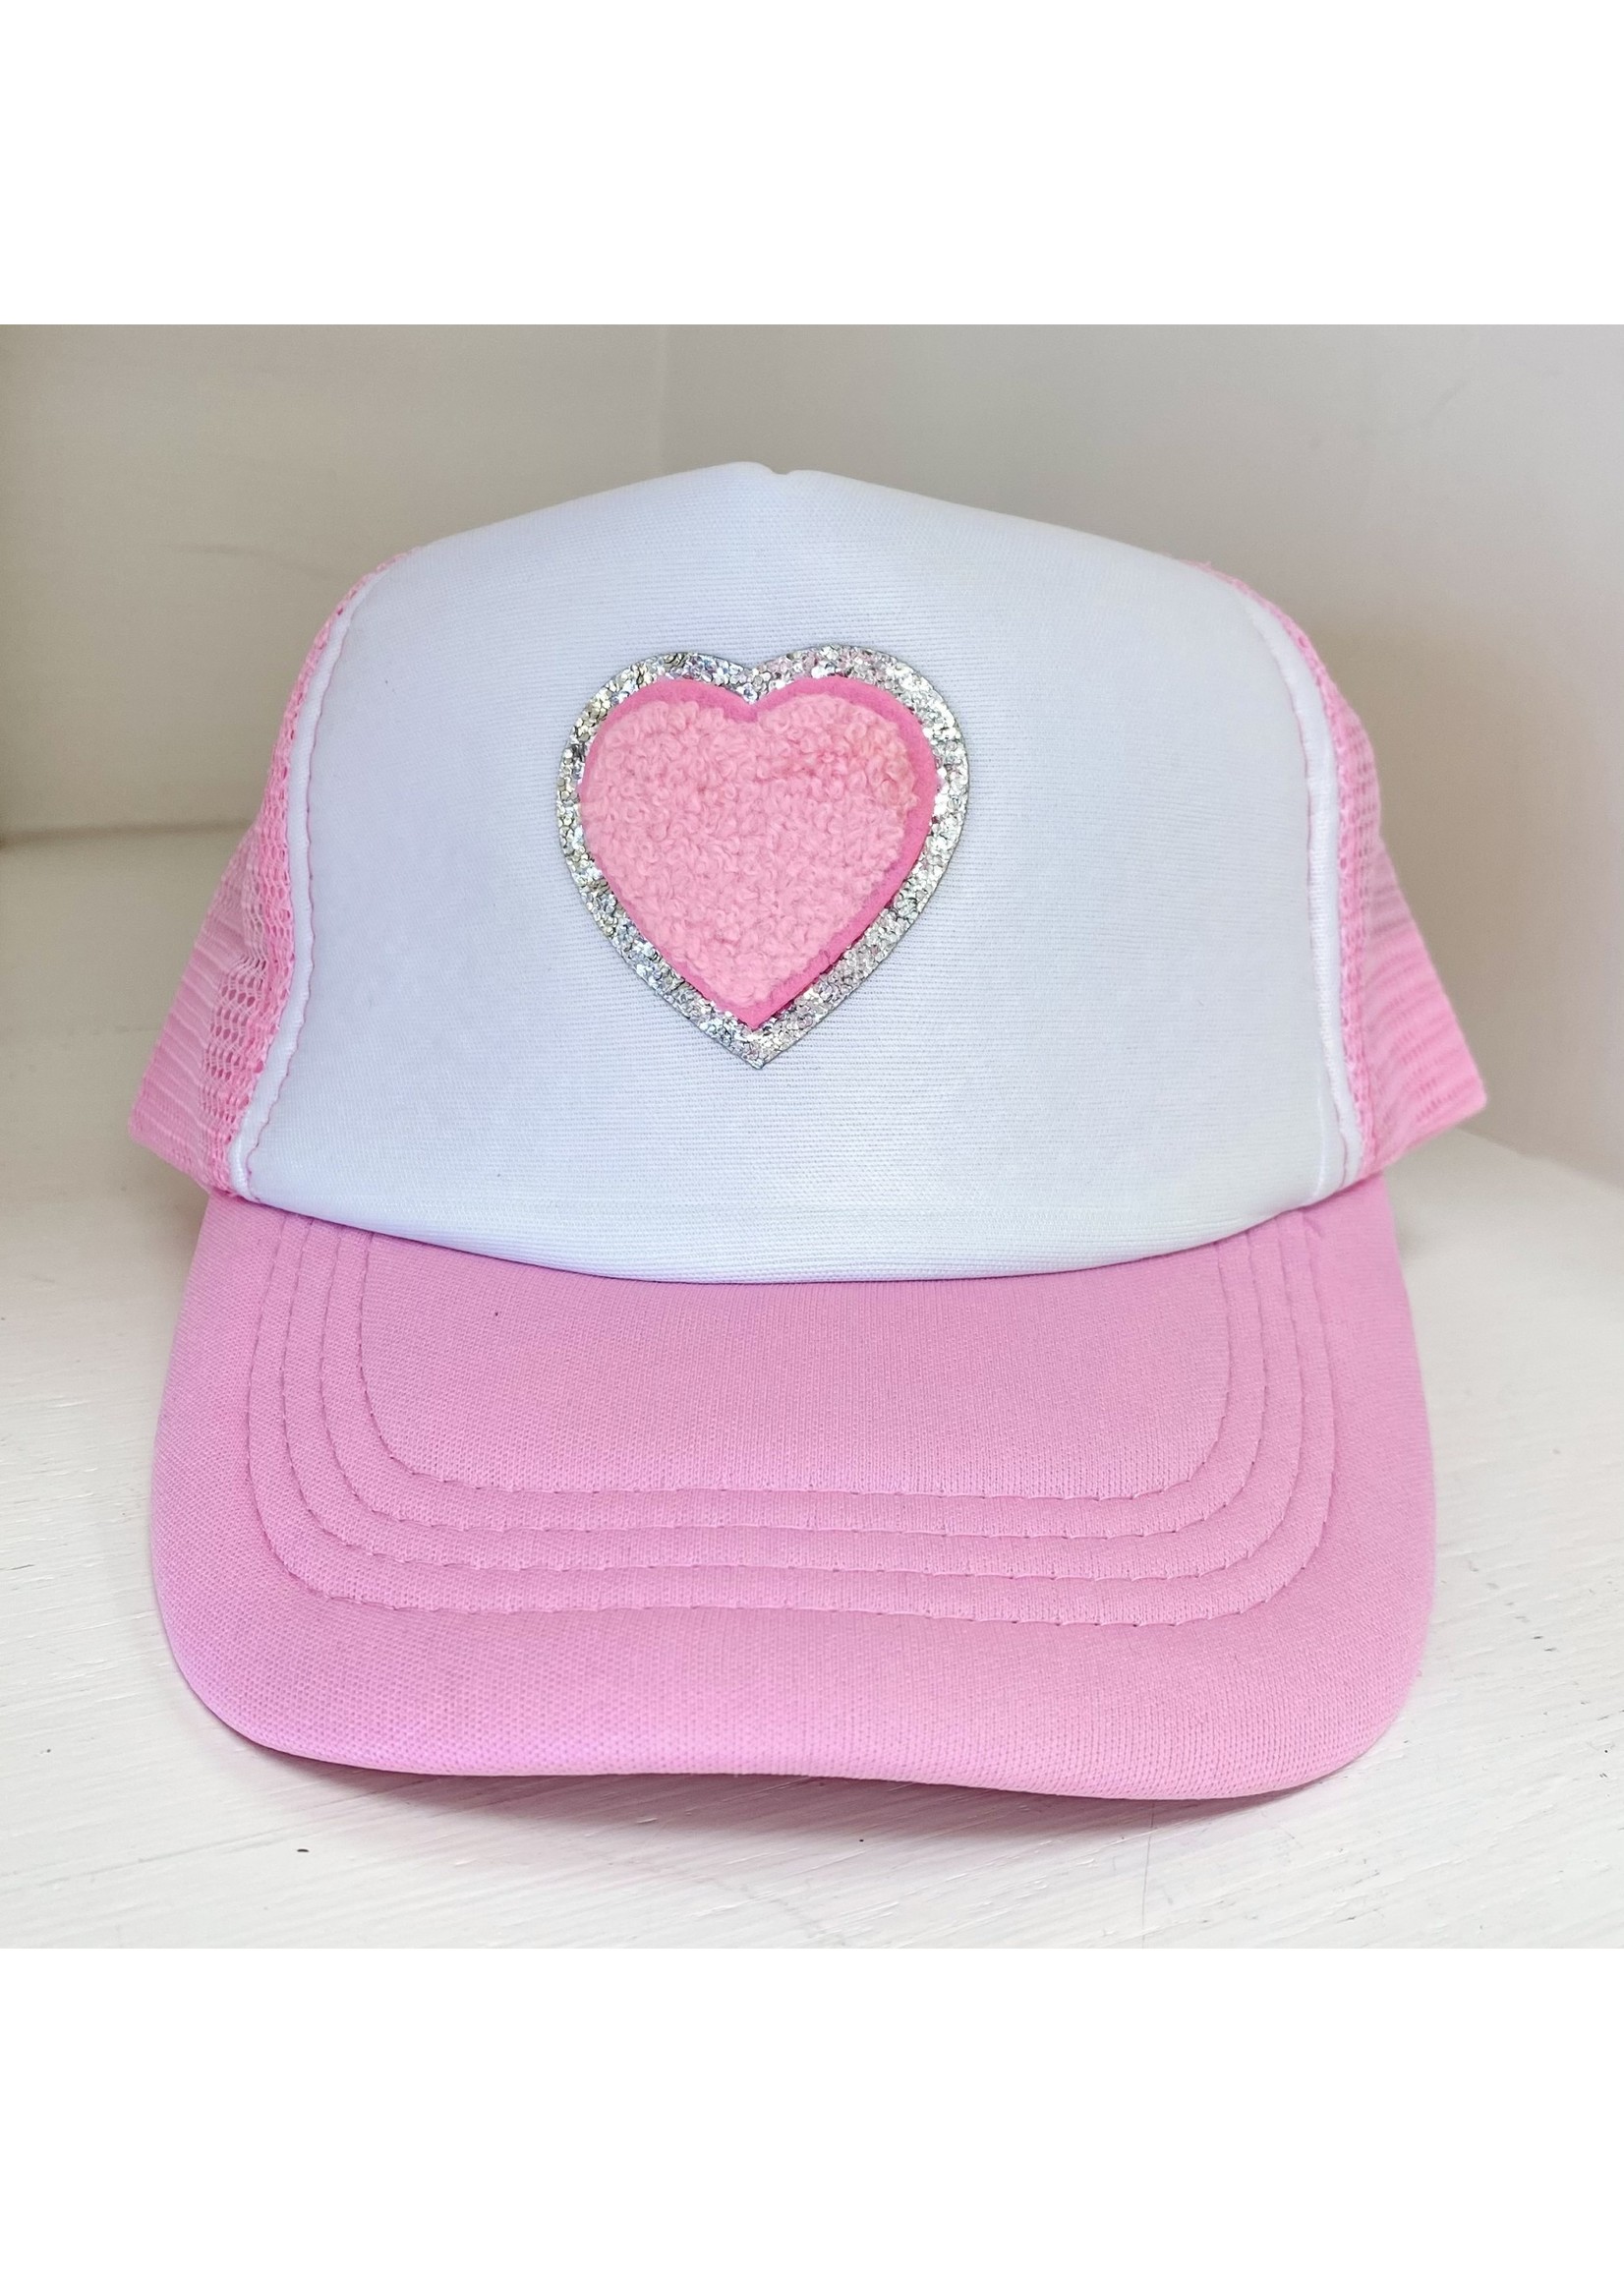 Sweet Wink Heart Patch Trucker Hat